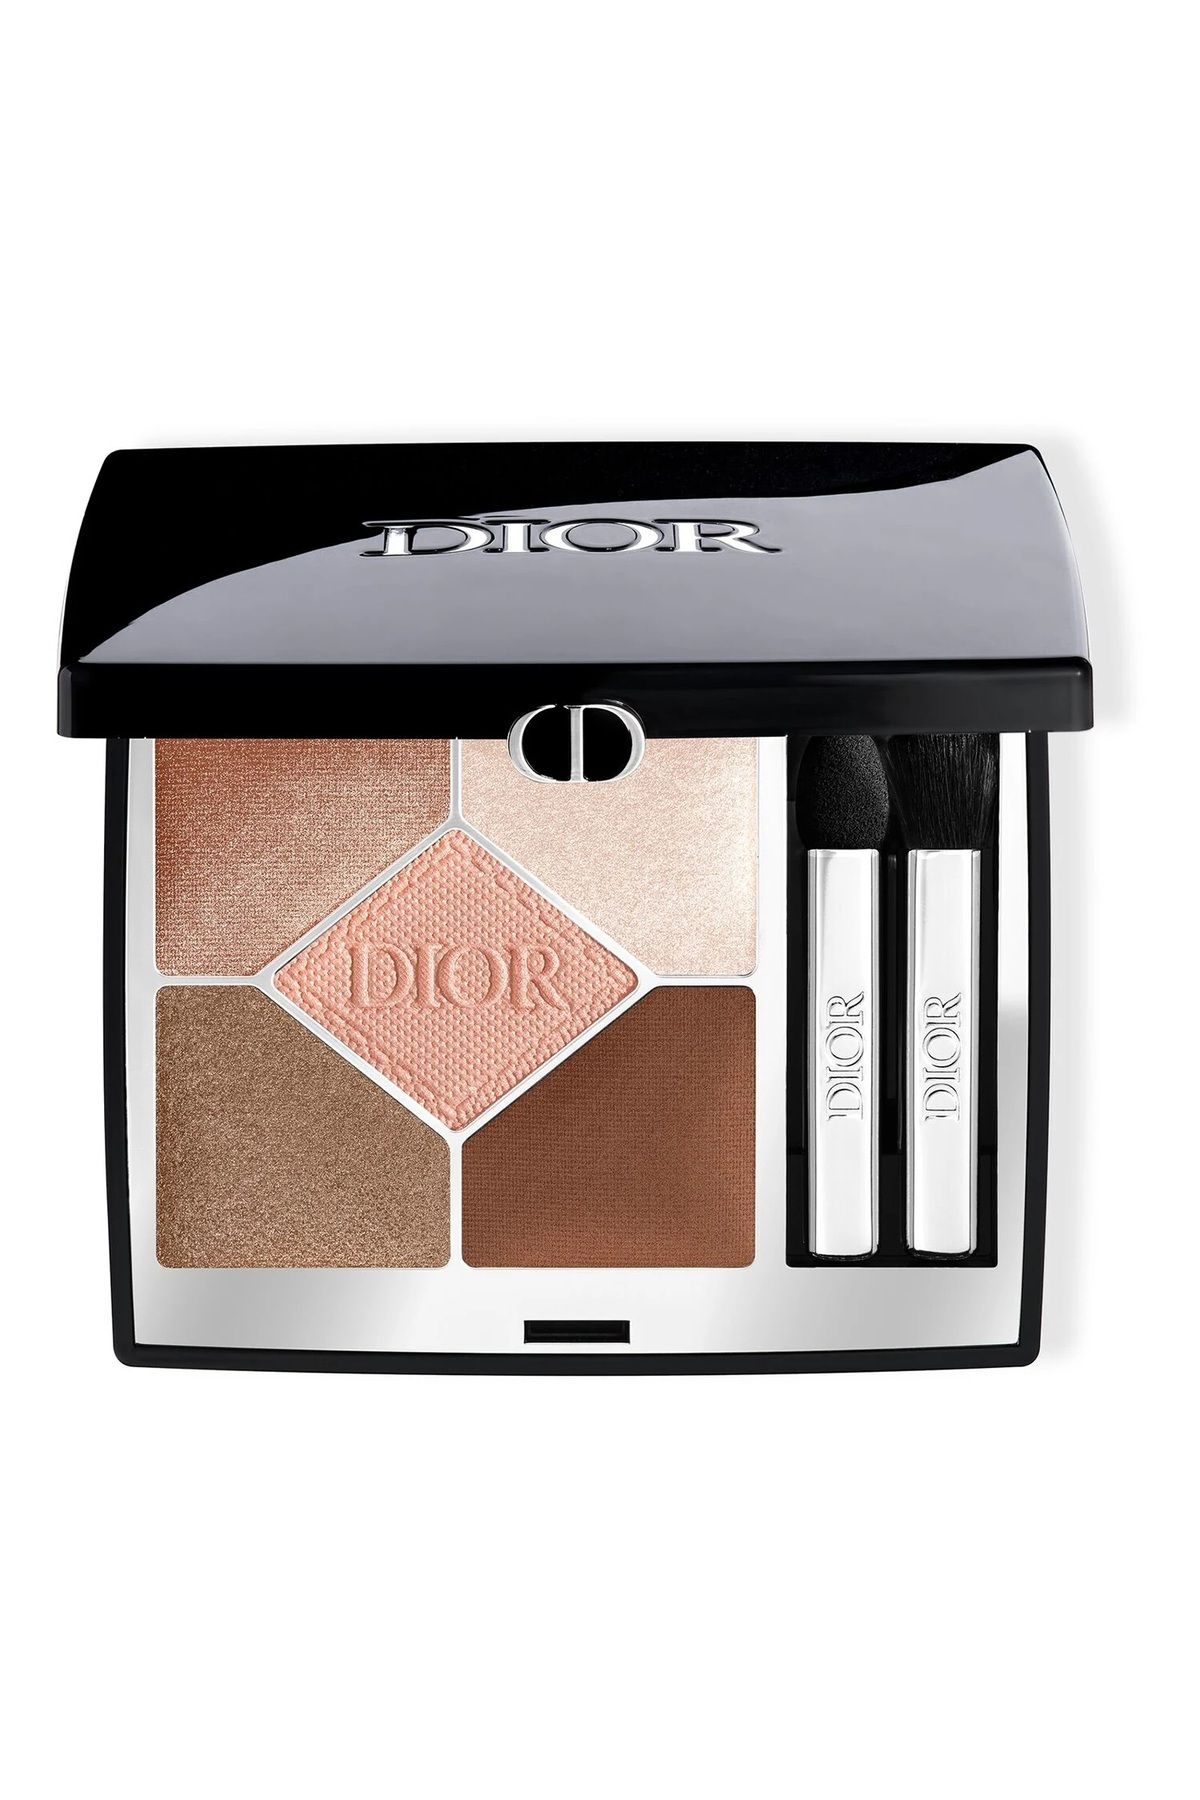 Dior 5 Couleurs Couture Eyeshadow Palette-Özel Olarak Tasarlanmış Pürüzsüz Canlandırıcı Göz Far Paleti